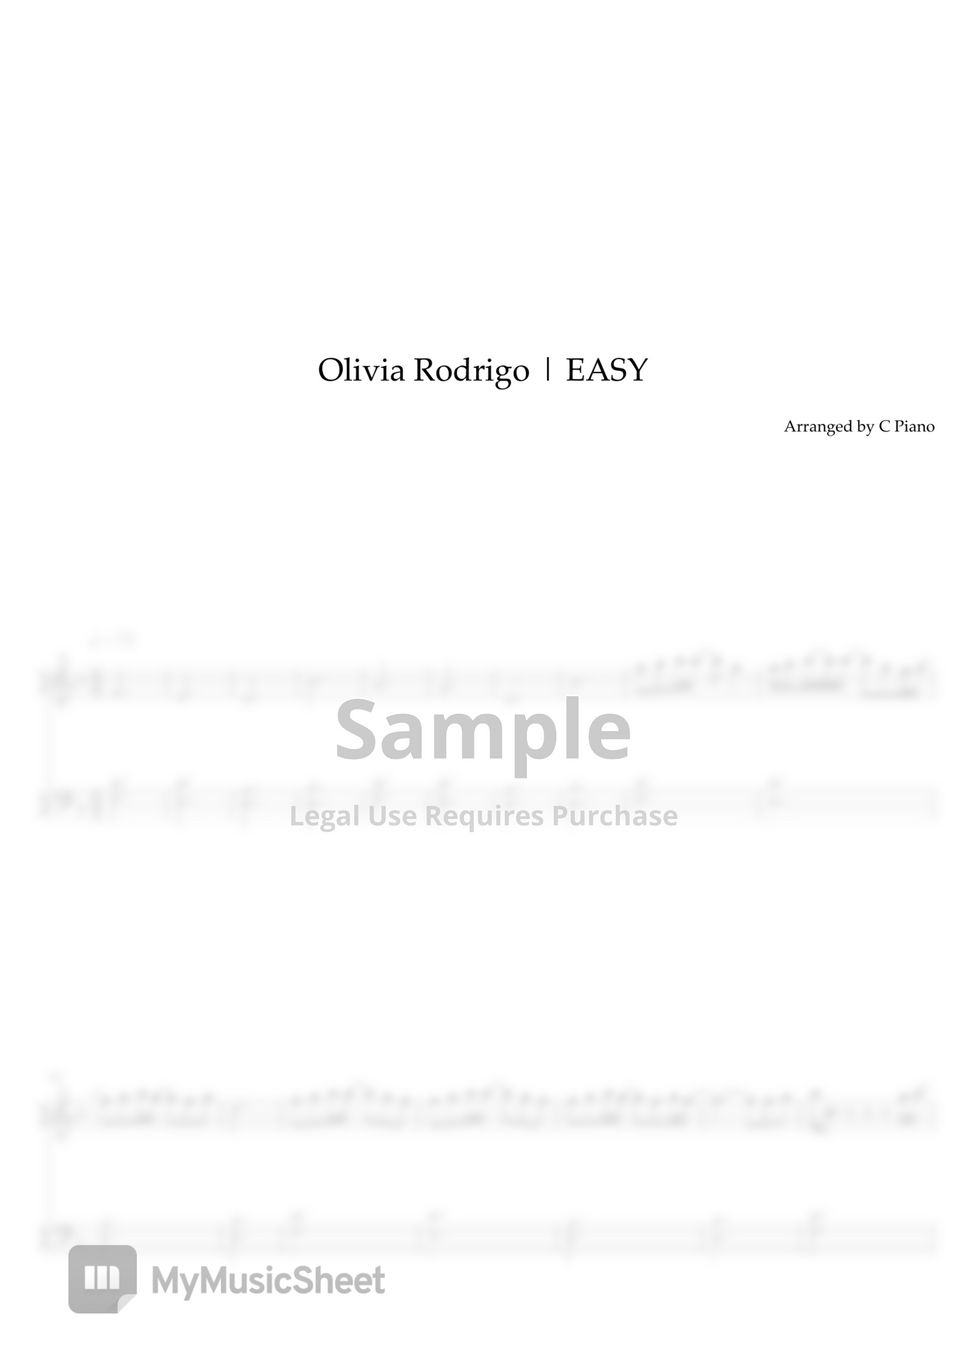 Olivia Rodrigo - traitor (Easy Version) by C Piano